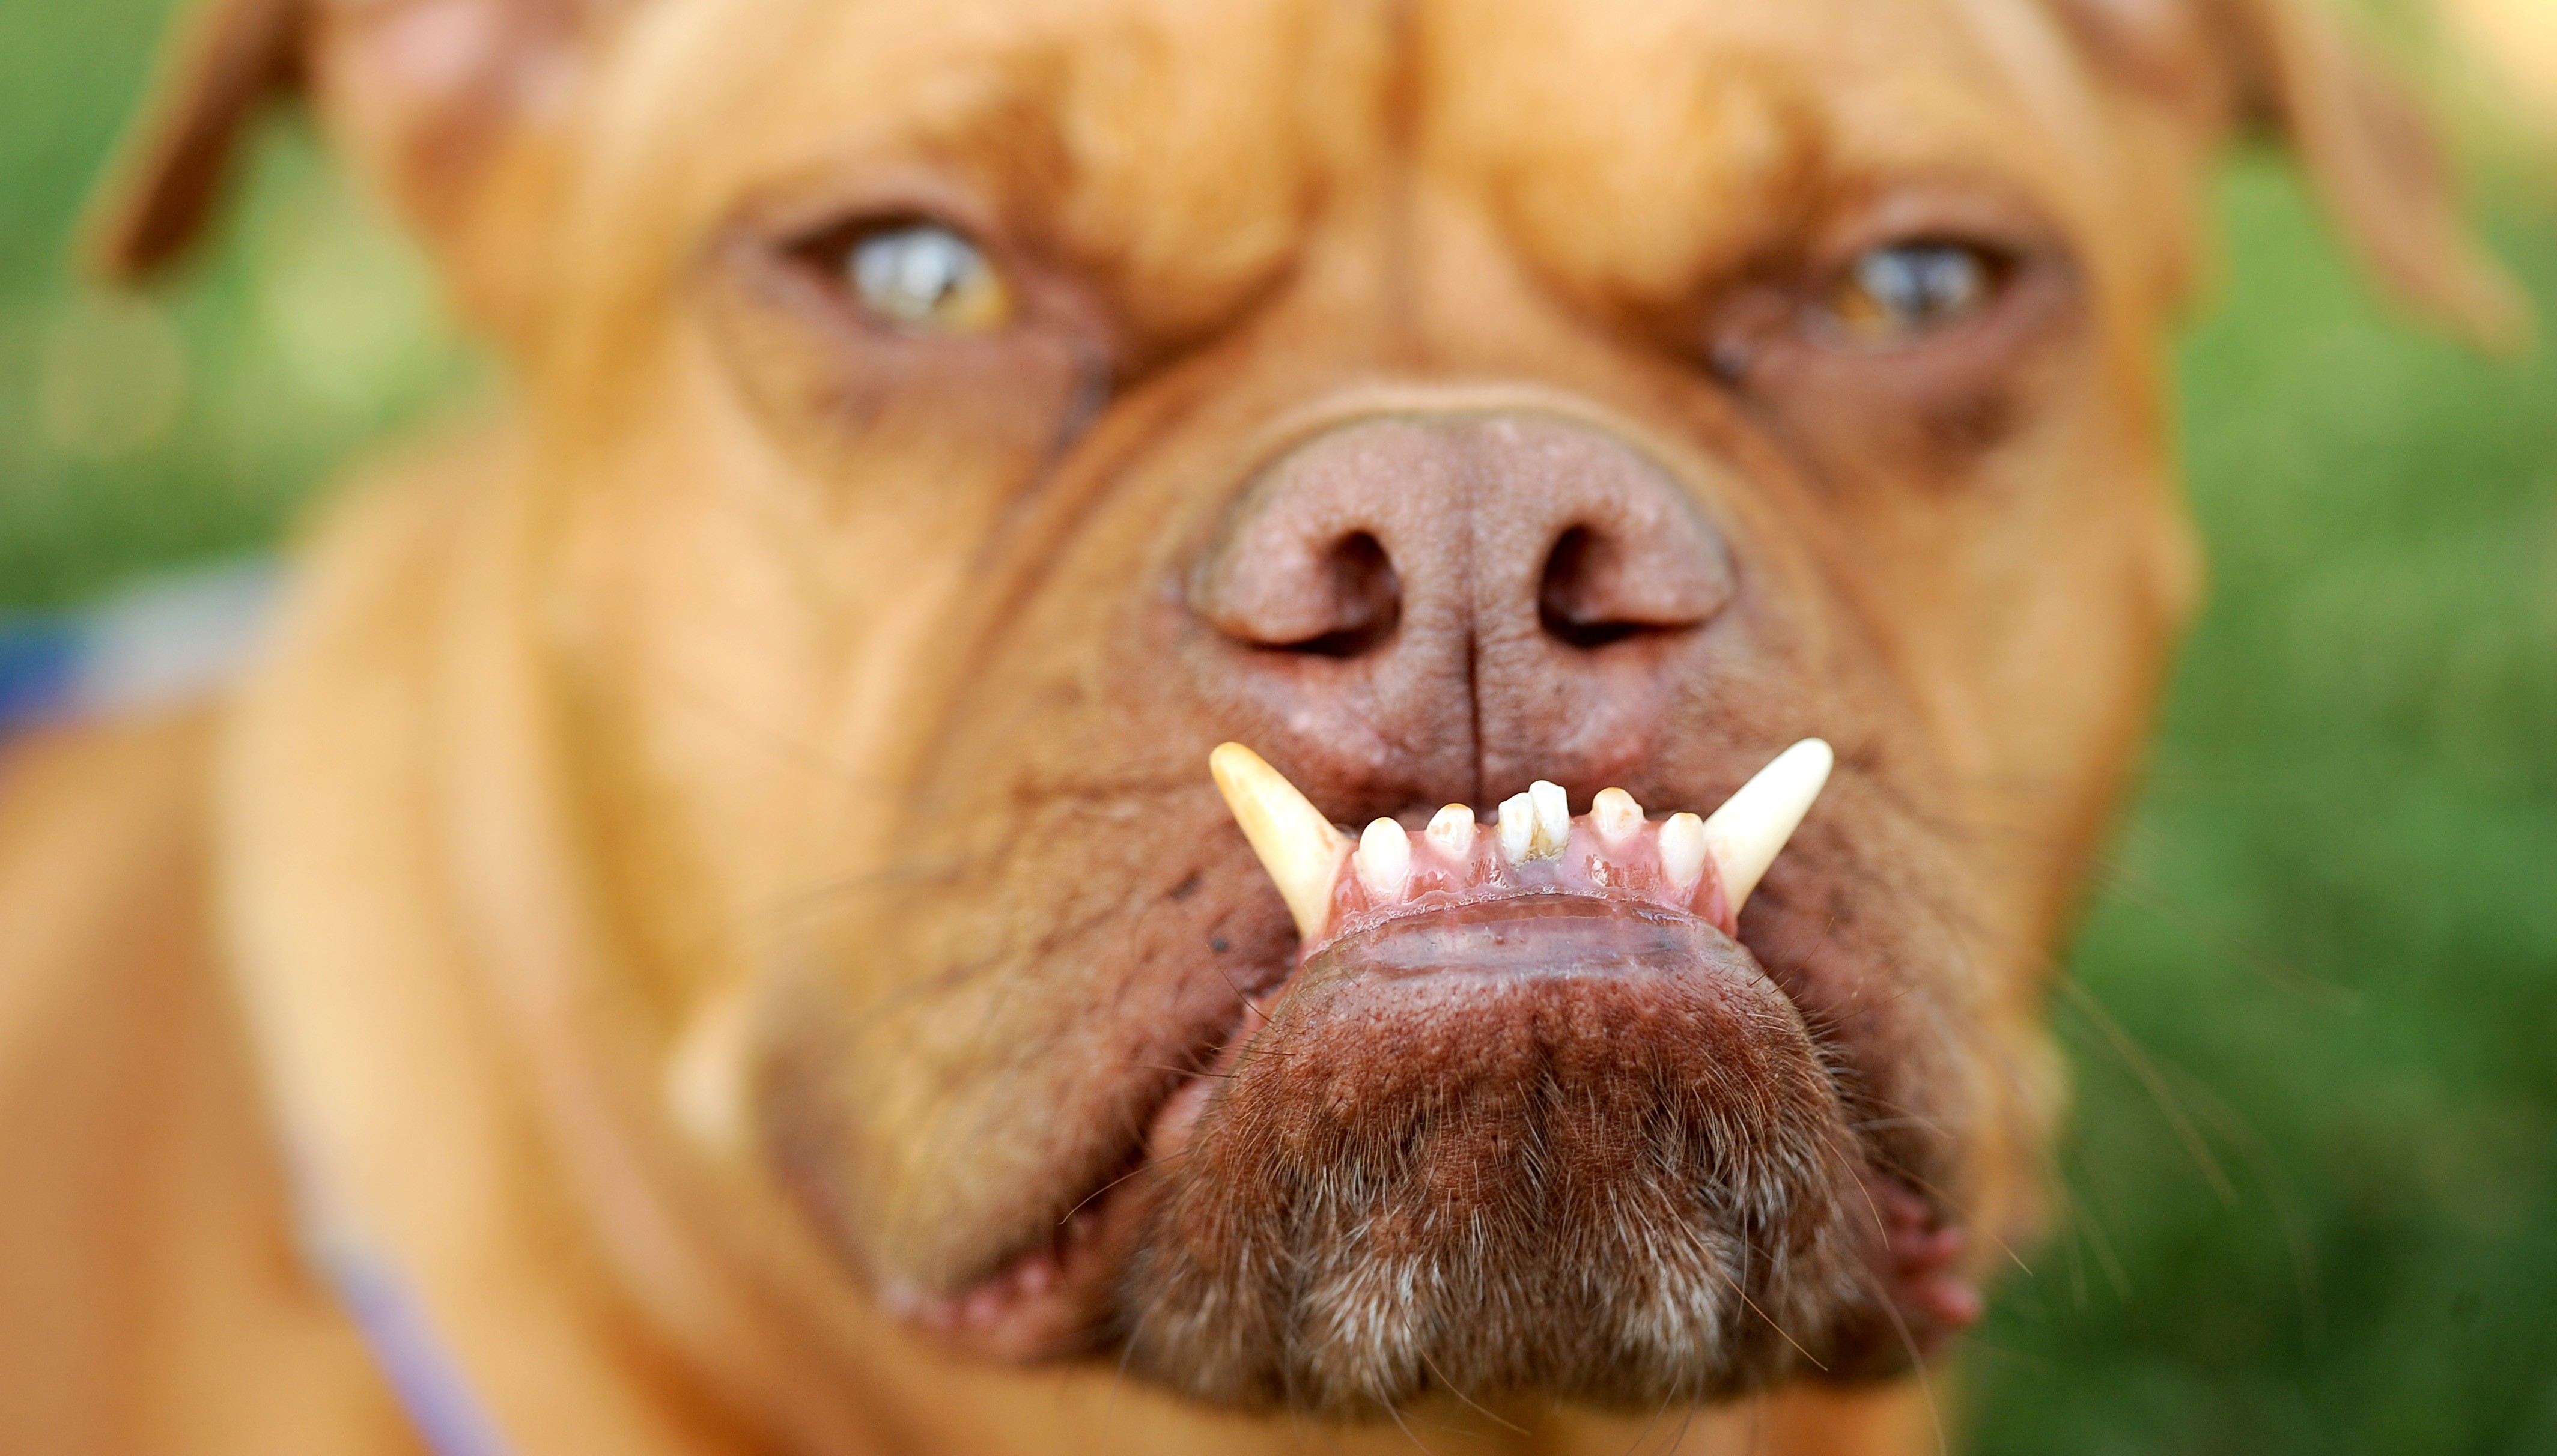 Det här är Pabst. Han tycker om att visa sina tänder.